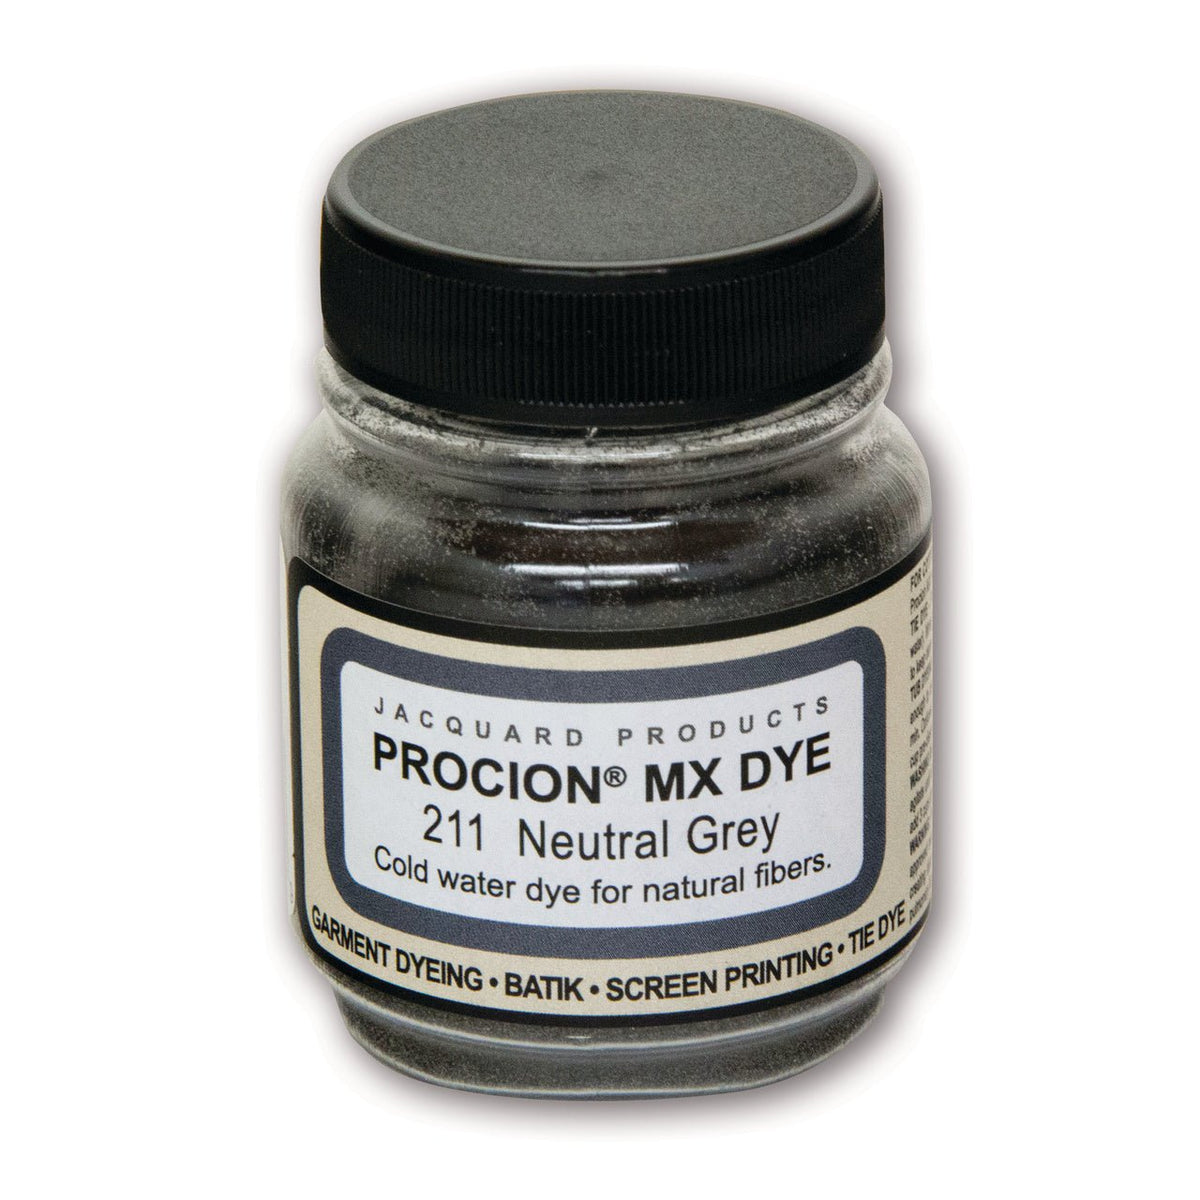 Jacquard Procion Mx Dye Olive Green 8Oz 